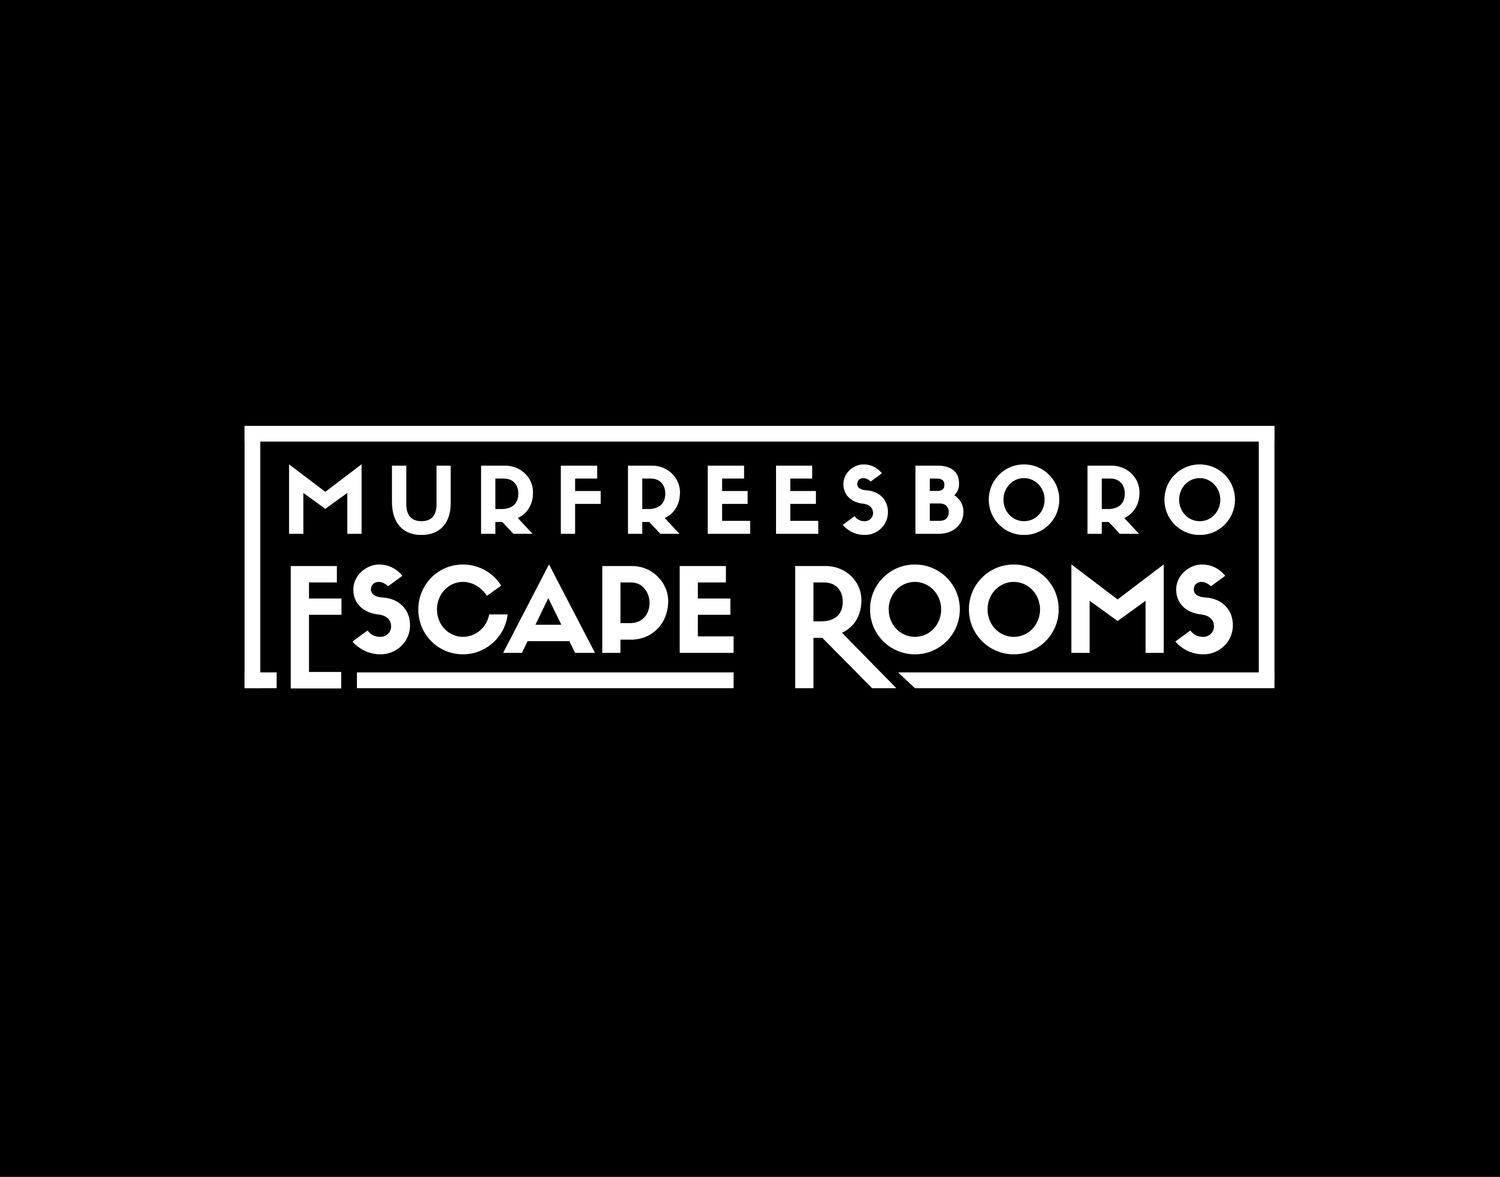 High Noon - Murfreesboro Escape Rooms.